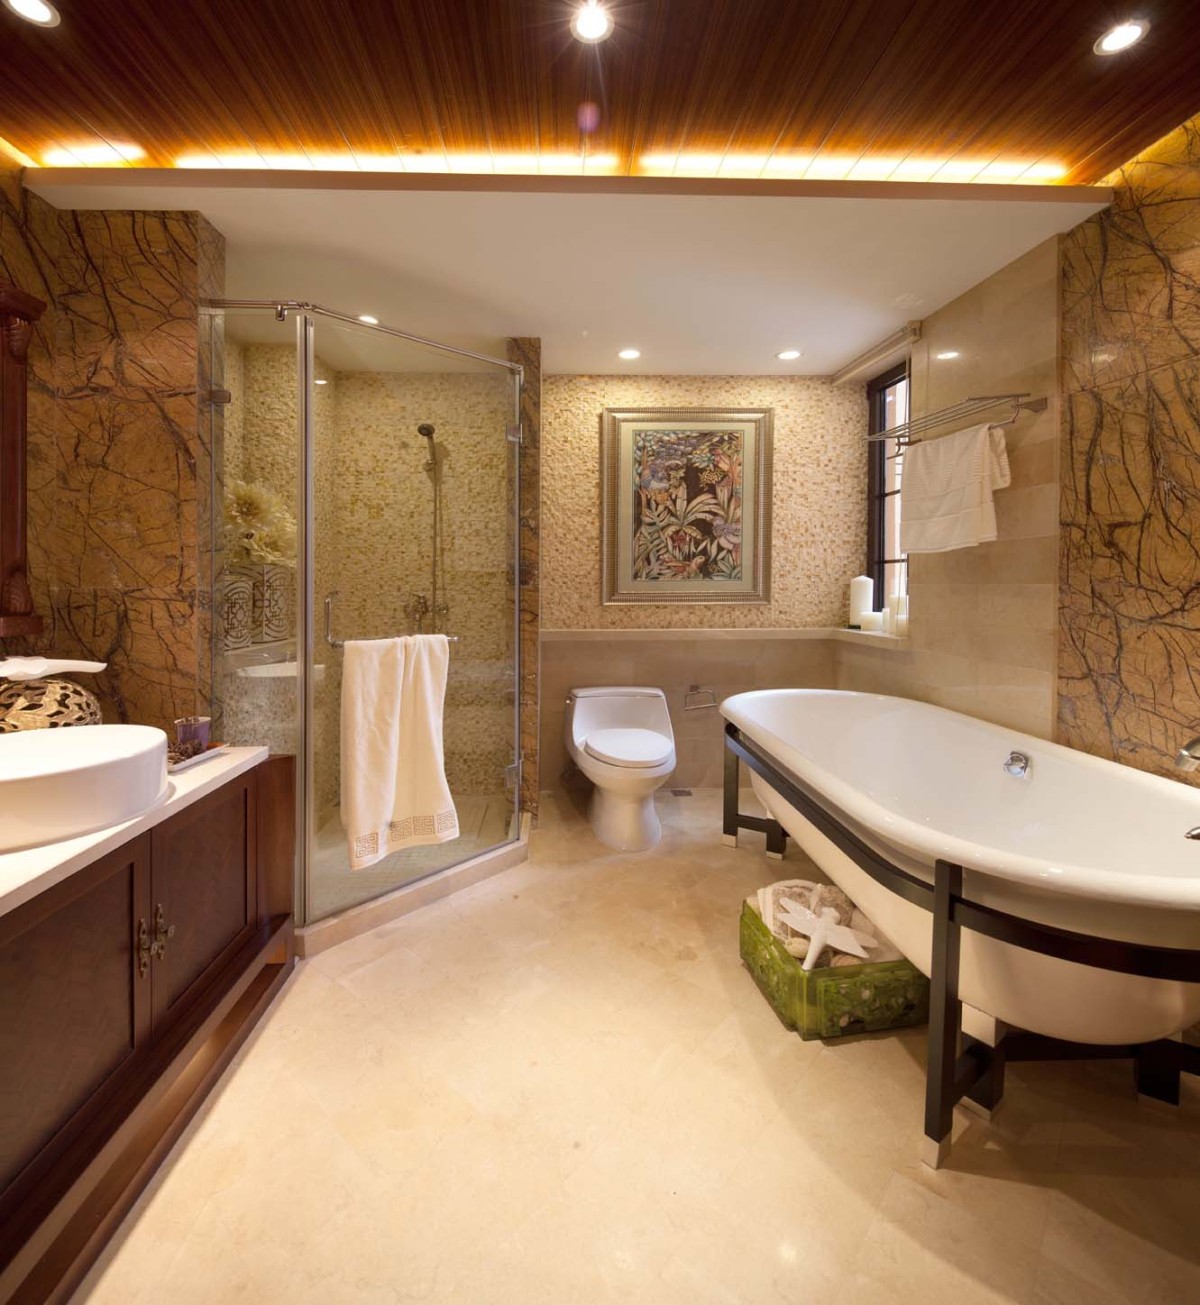 美式混搭风格四居室卫生间淋浴房浴缸布置图